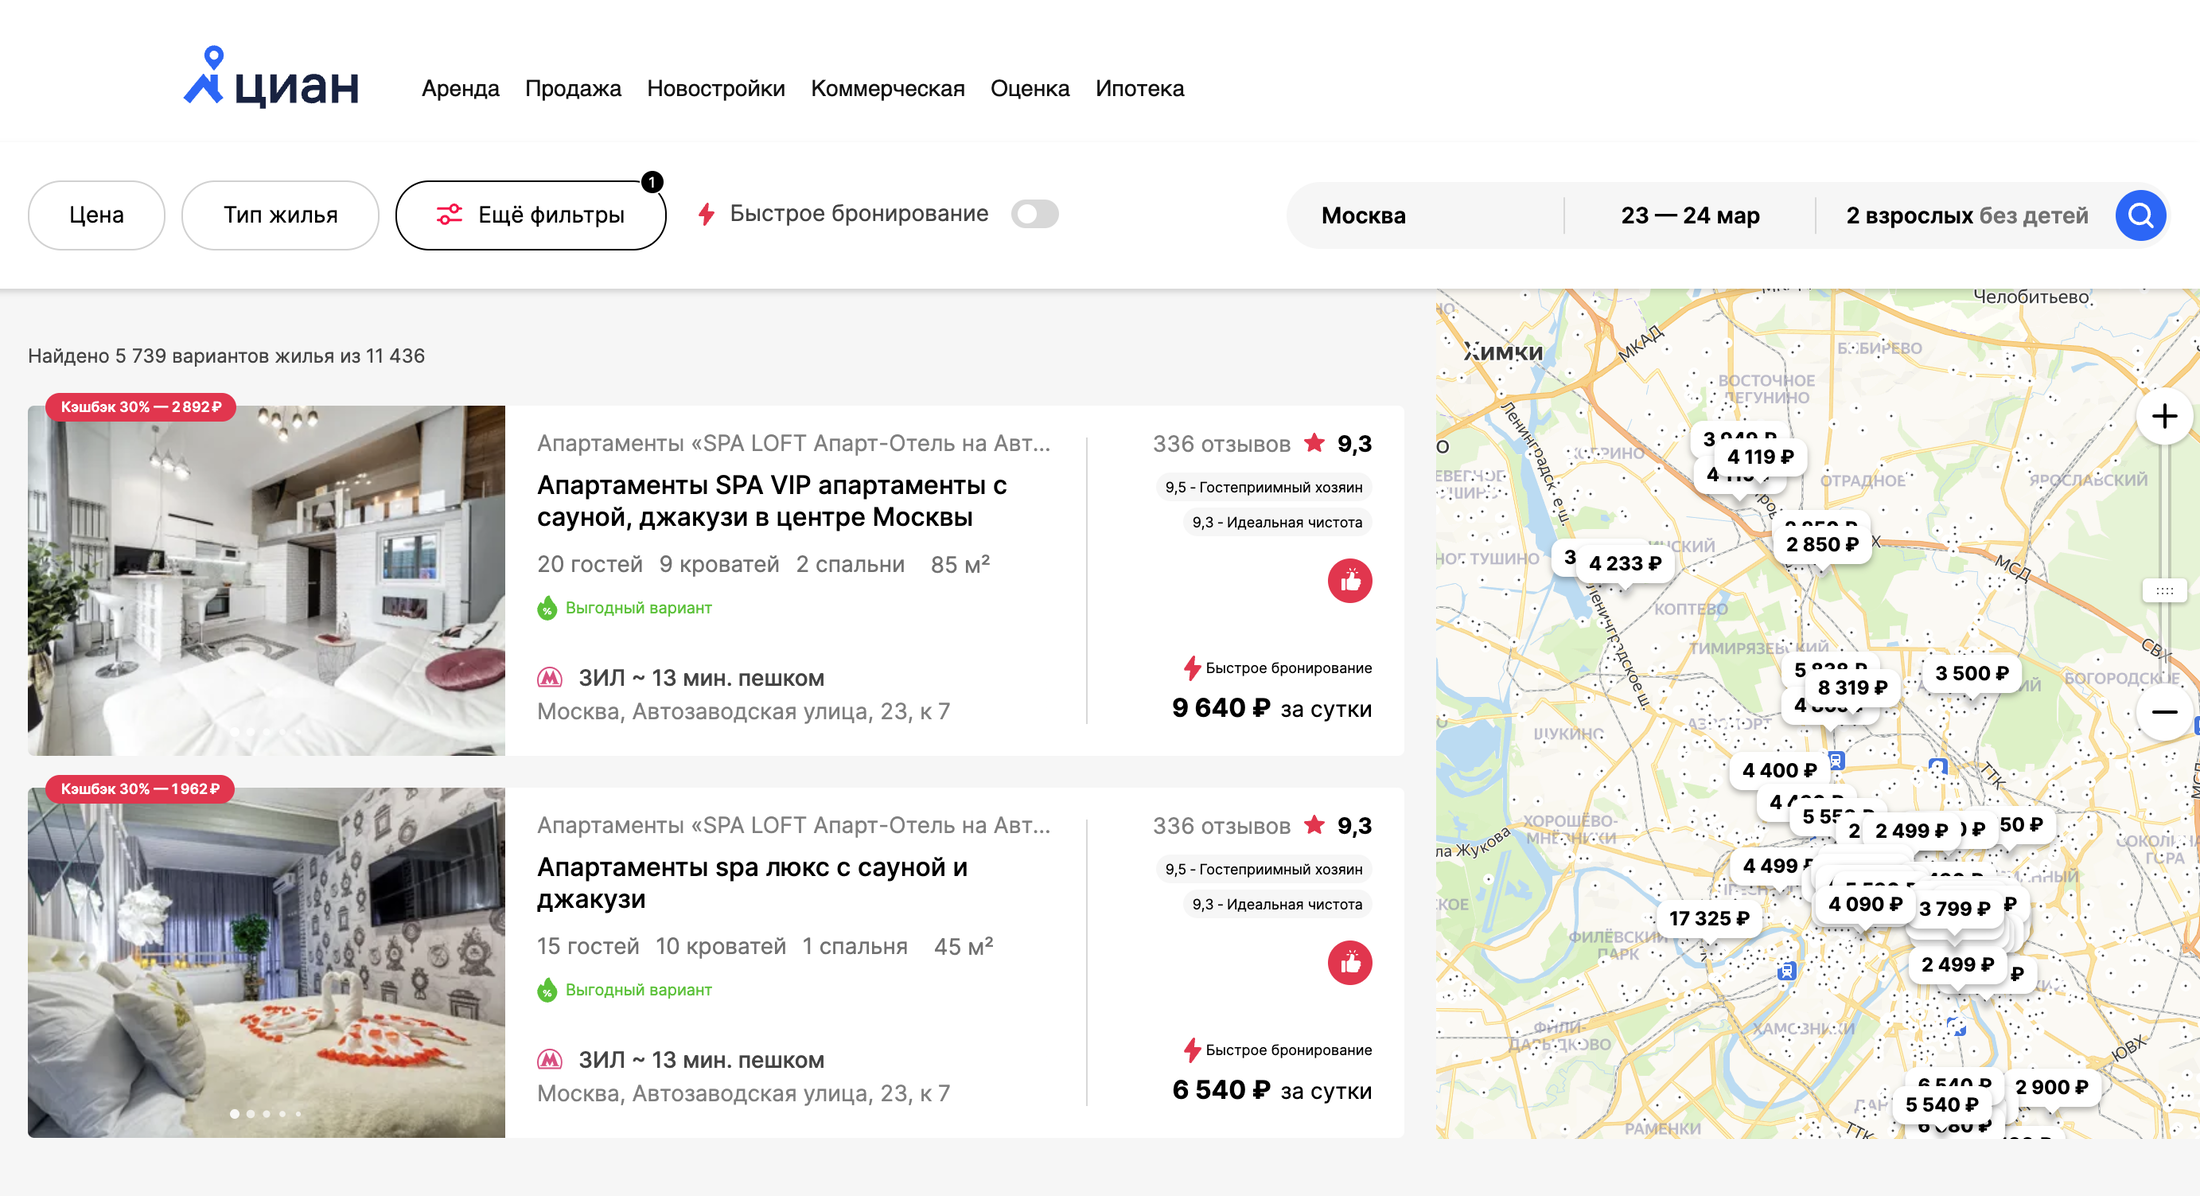 Квартиры, которые можно забронировать онлайн, доступны на партнерском сайте cian.sutochno.ru. У него все функции и интерфейс платформы «Суточно»